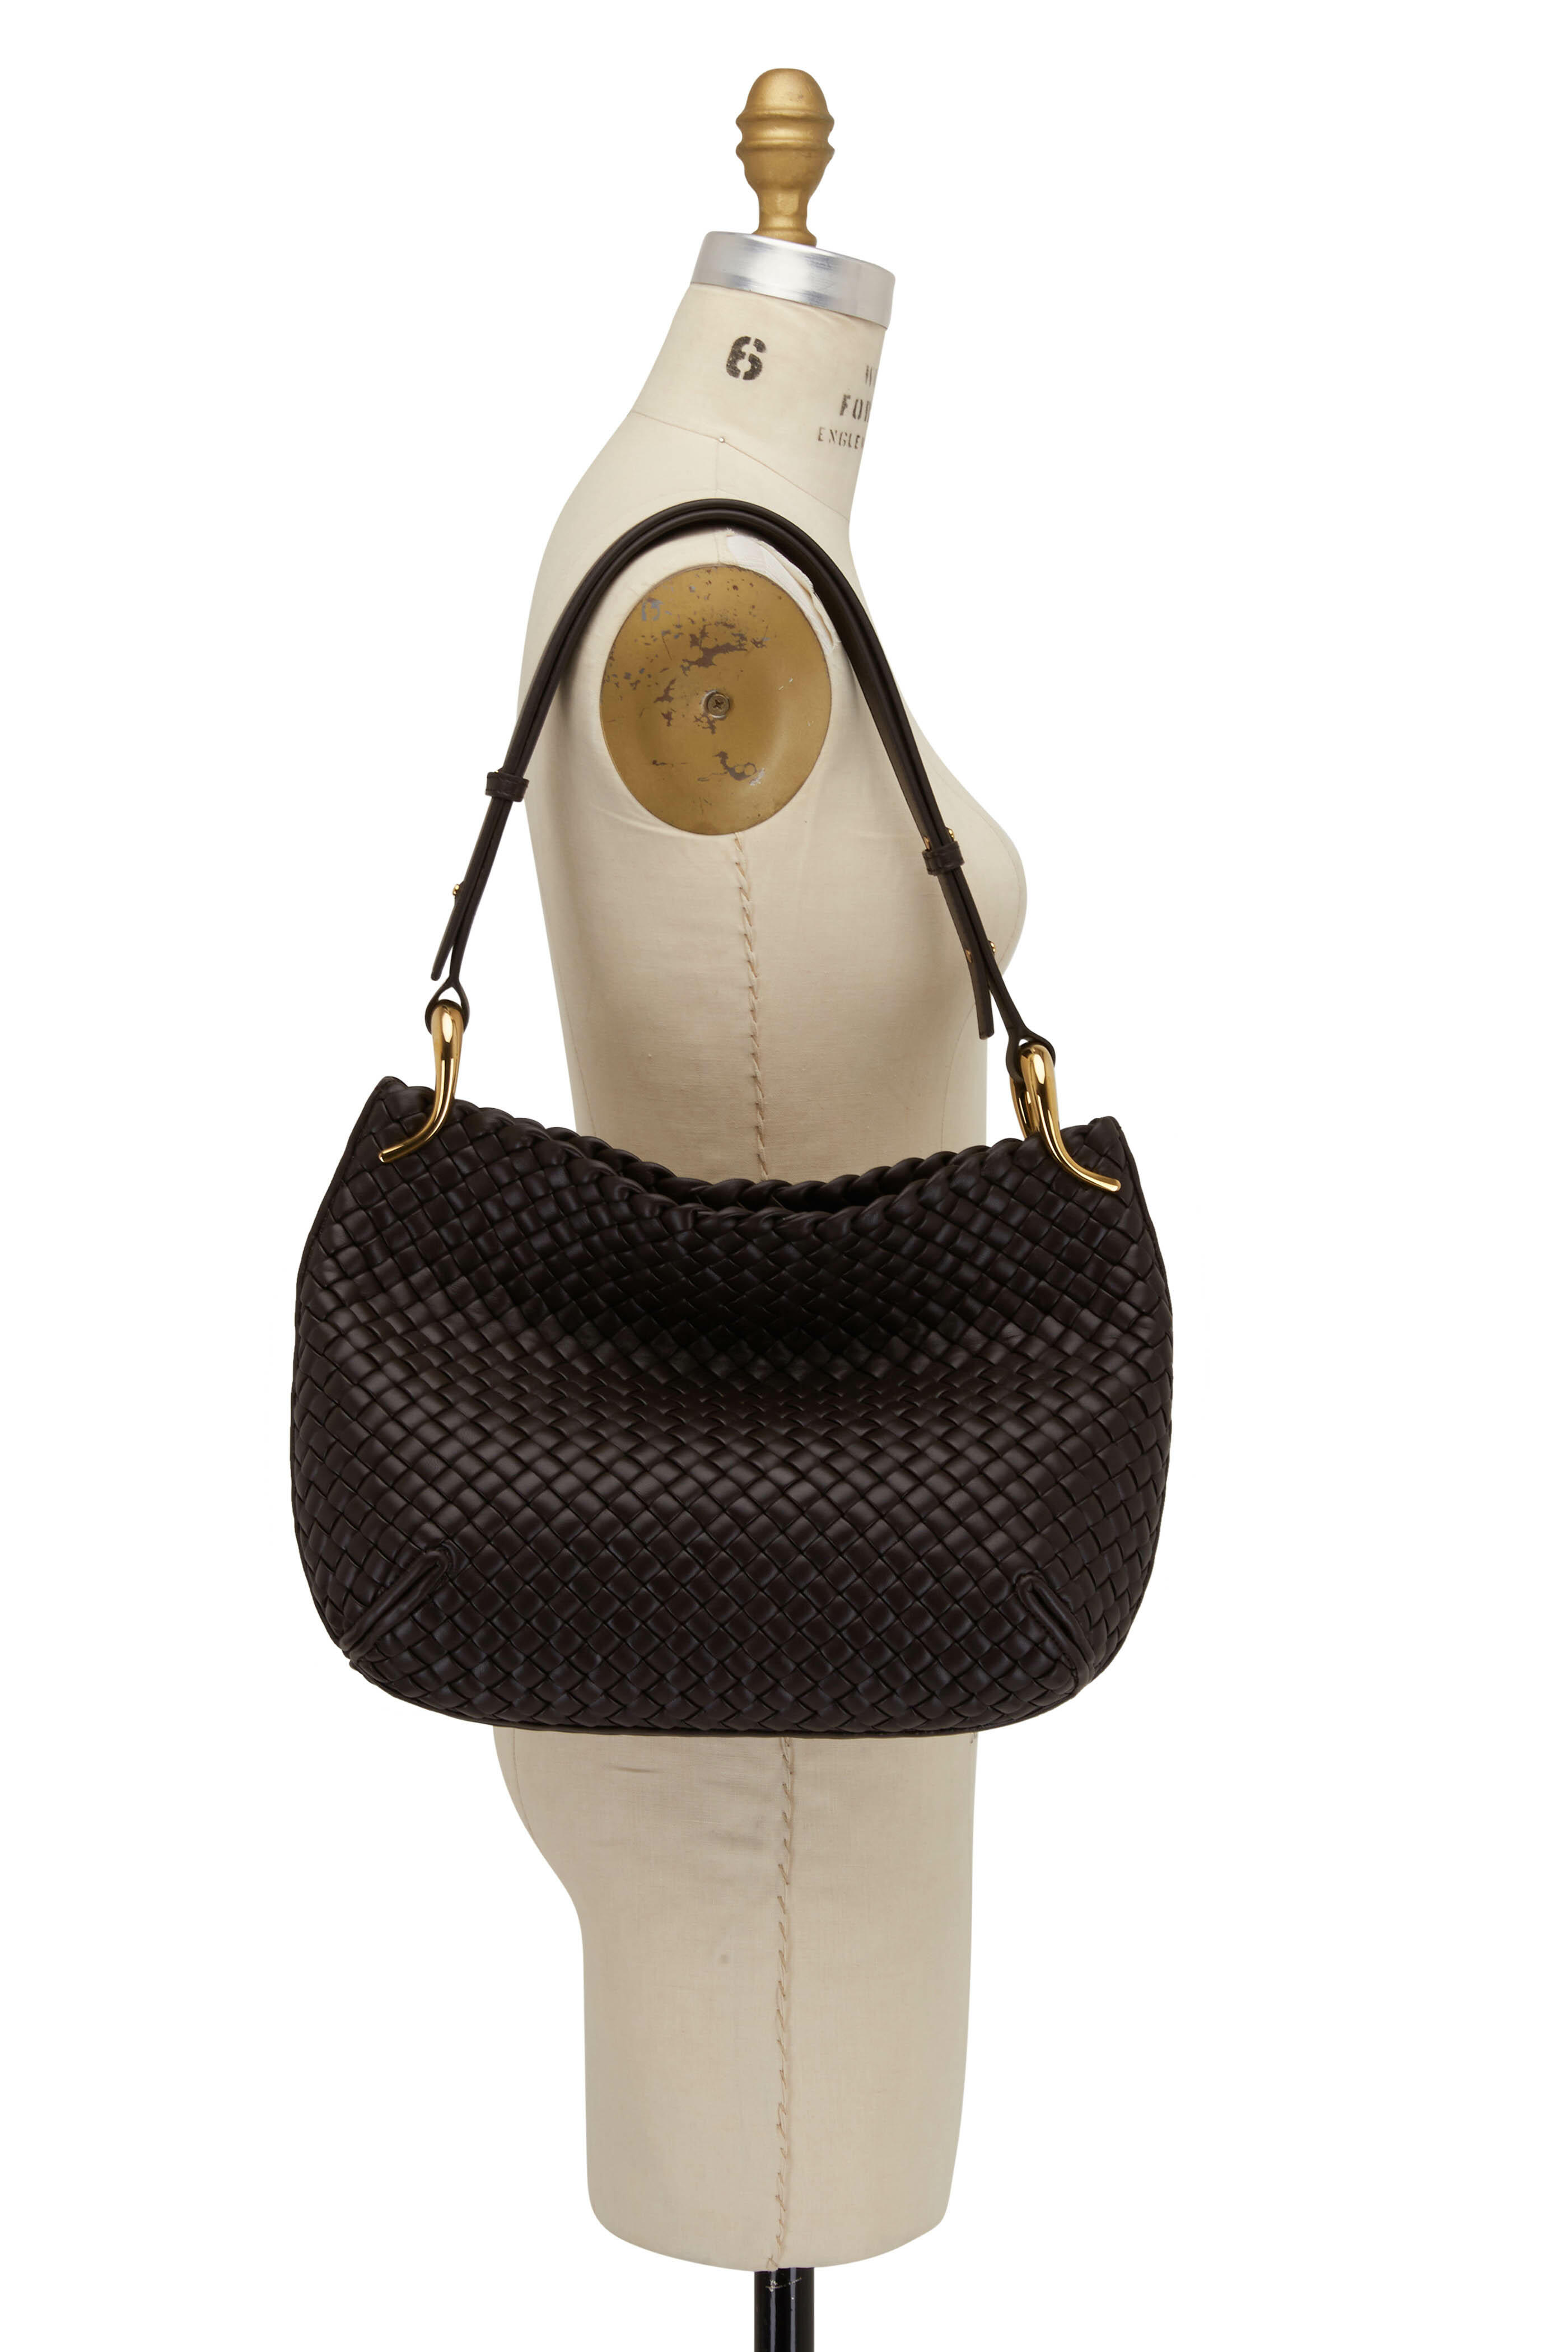 Bottega Veneta Large Hobo Intrecciato Shoulder Bag in Fondant & Muse Brass